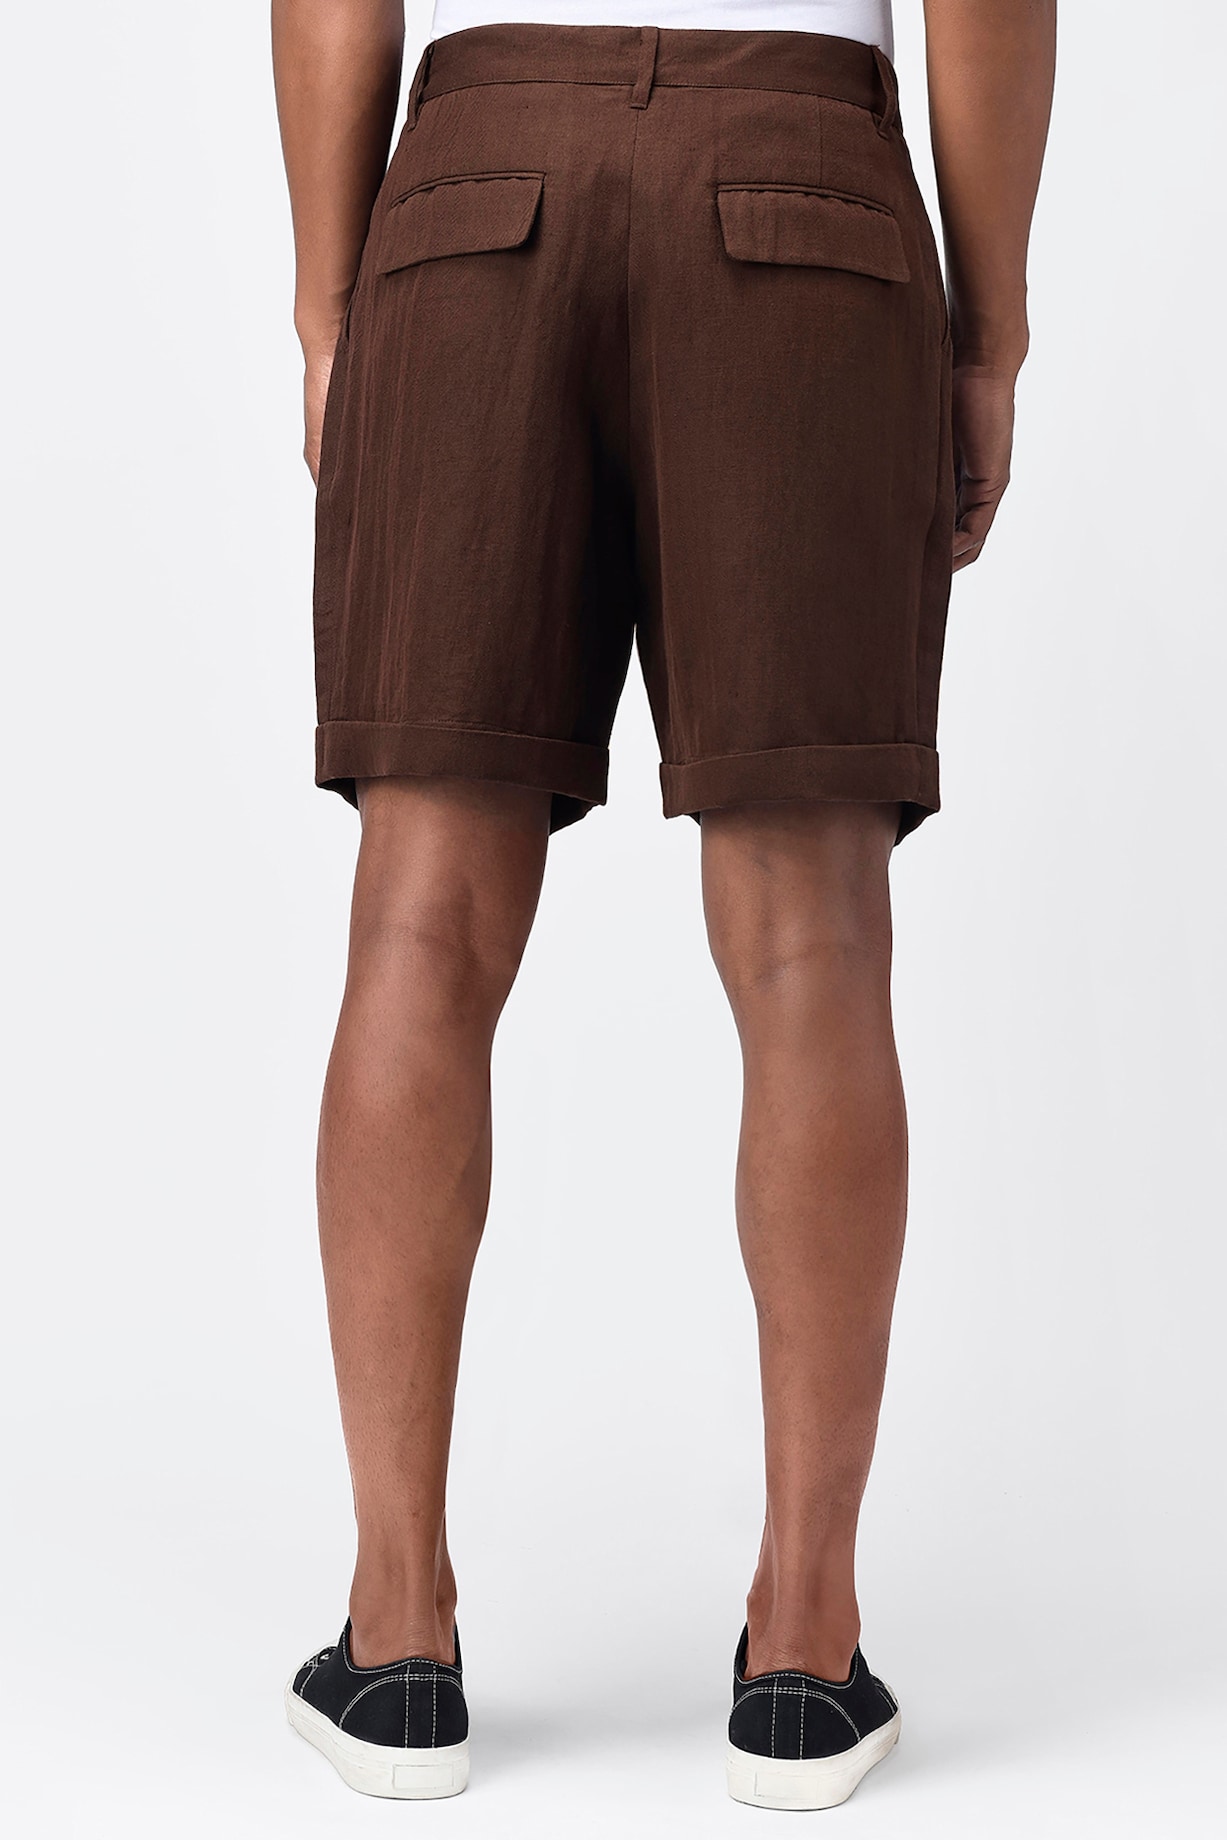 Umber Brown Herringbone Shorts by Genes Lecoanet Hemant Men